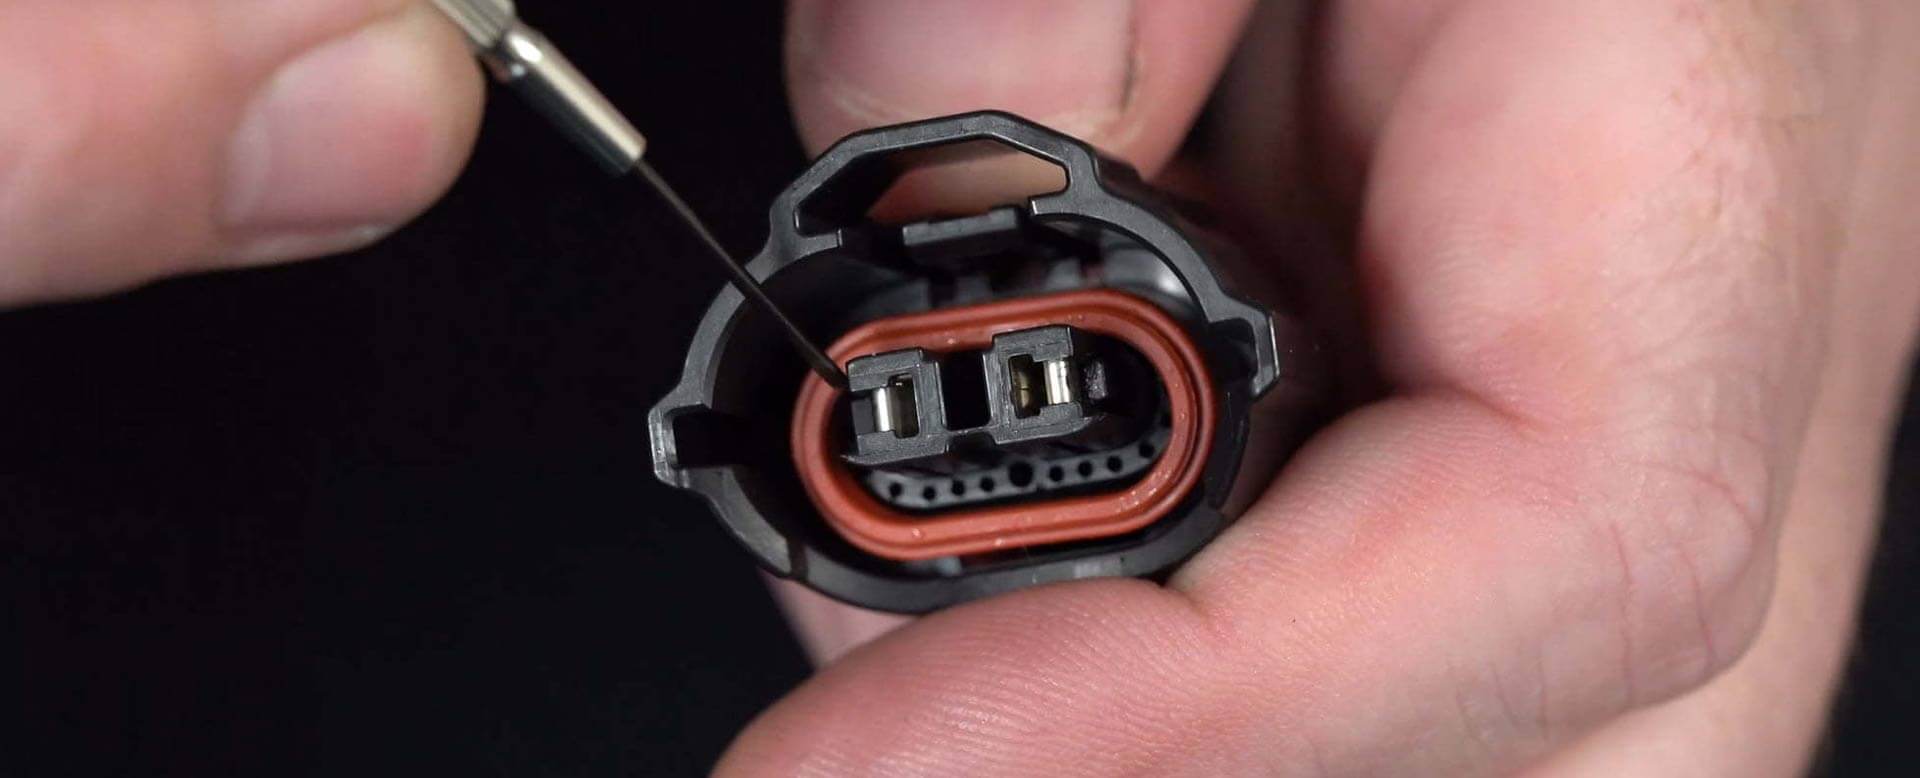 connector repair